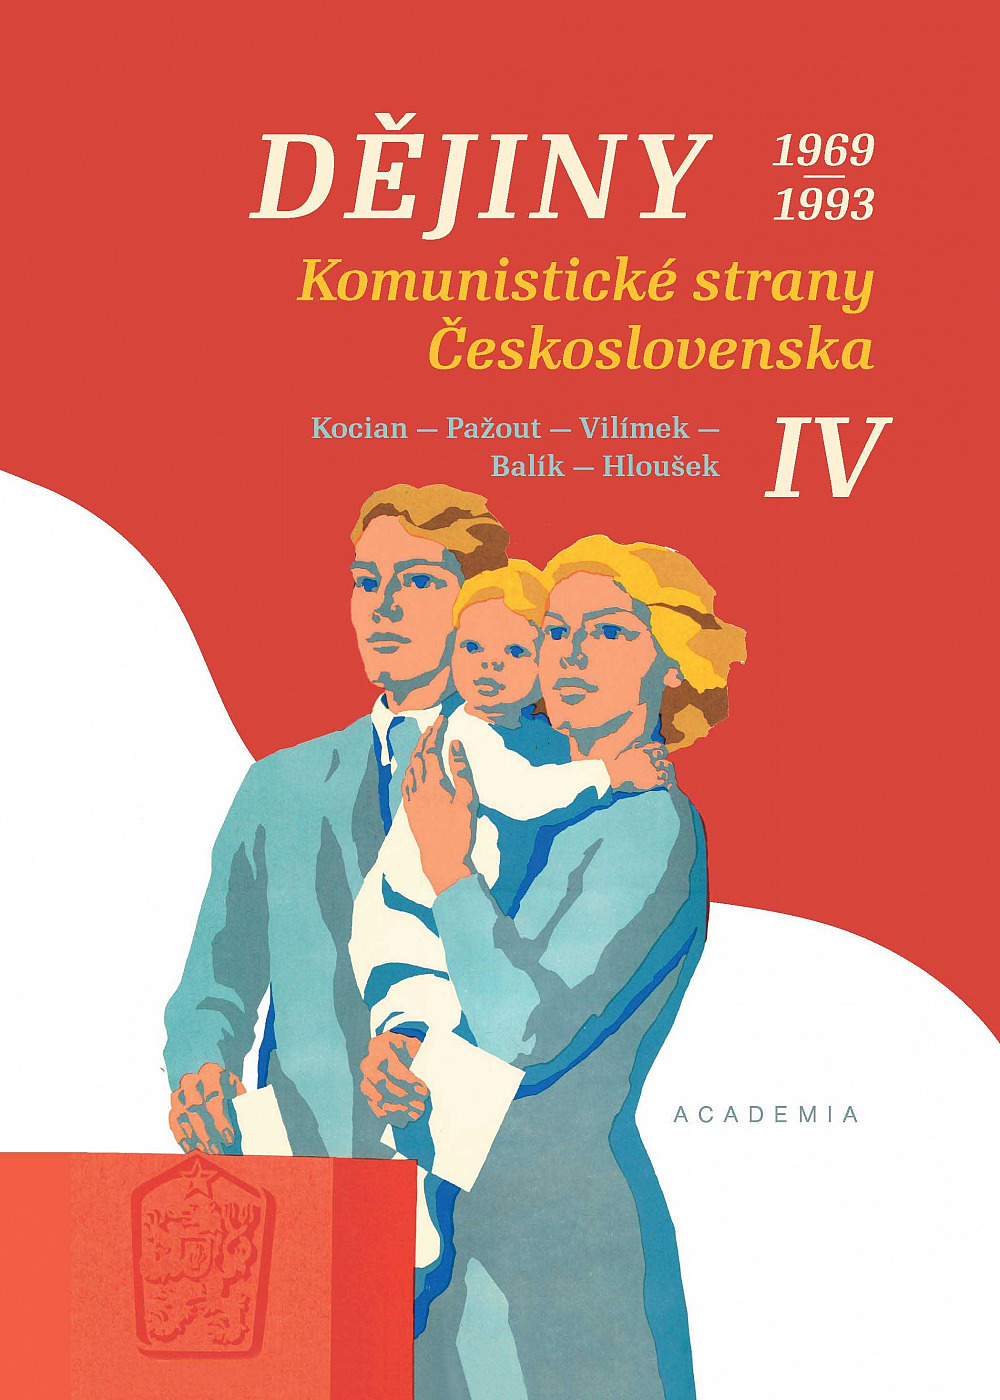 Dějiny Komunistické strany Československa IV. 1969–1993